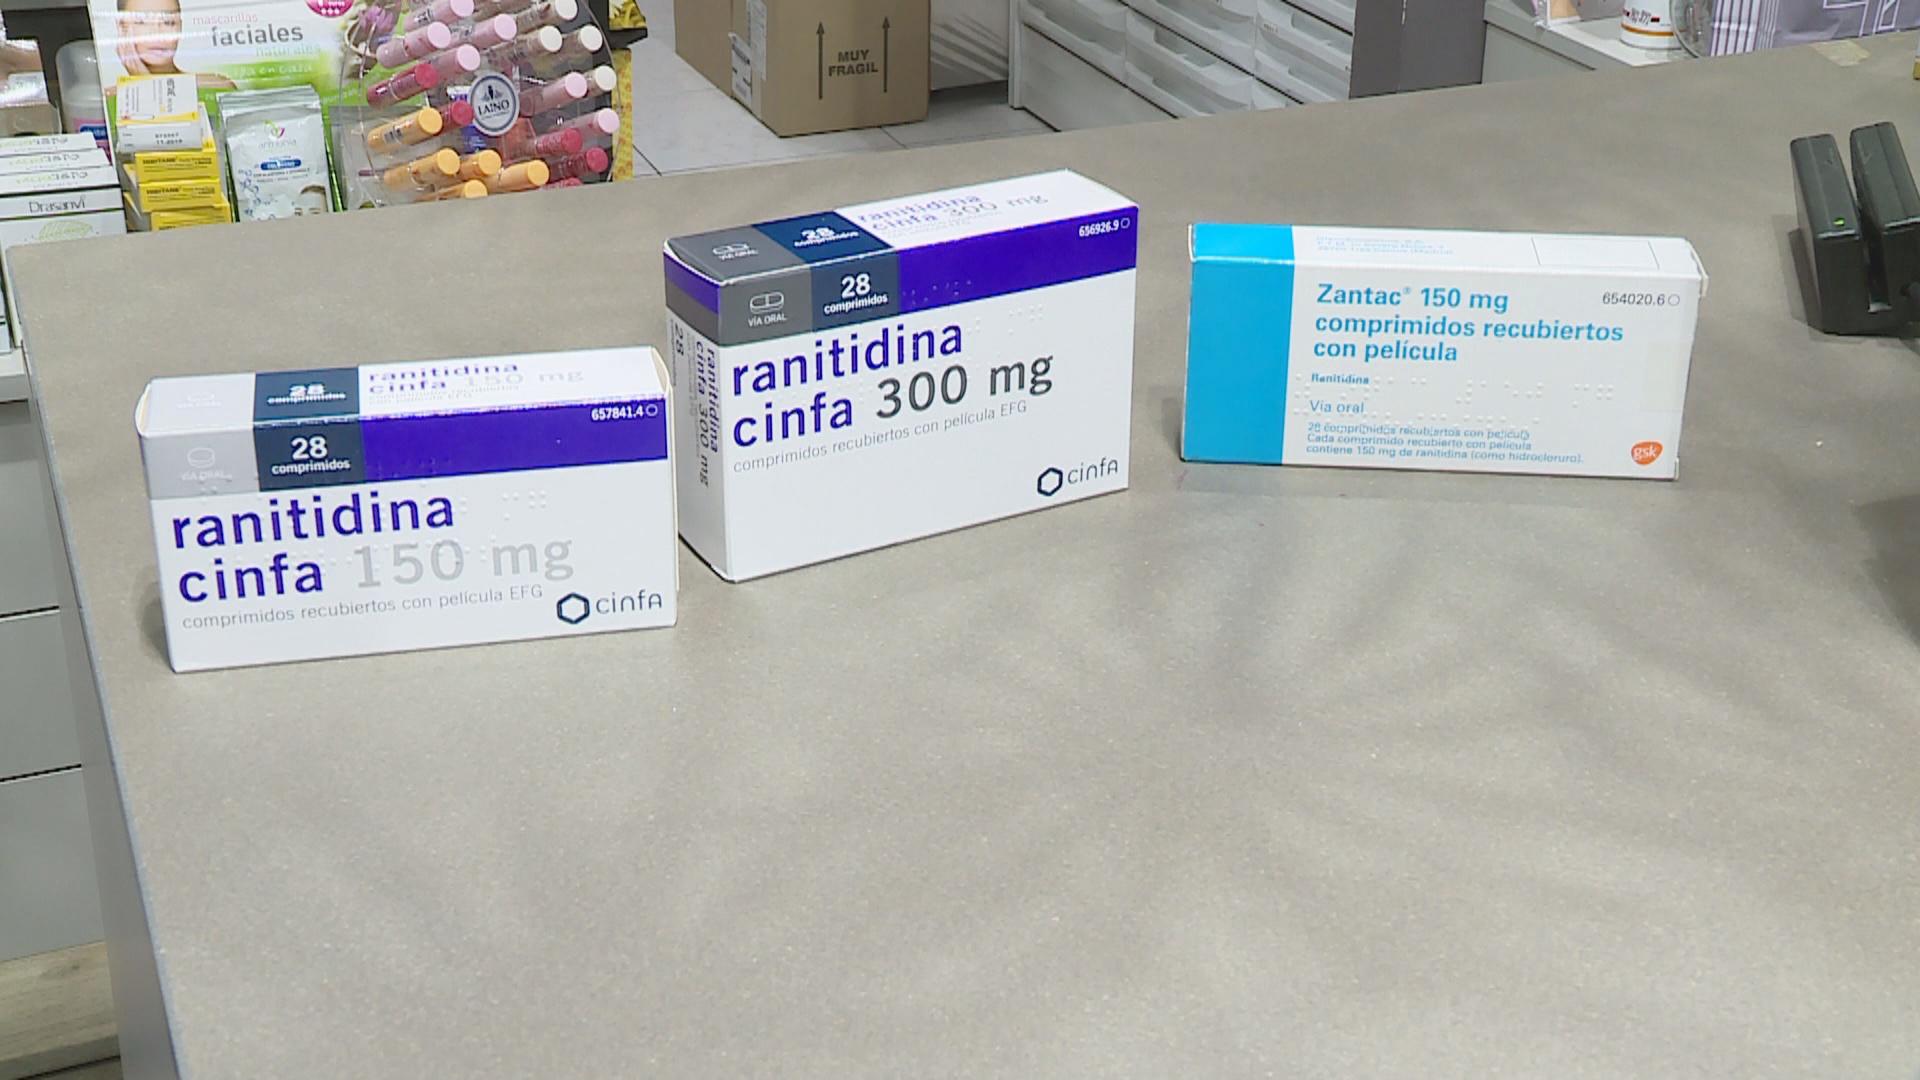 Salut ha informat de la retirada de medicaments que contenen rani